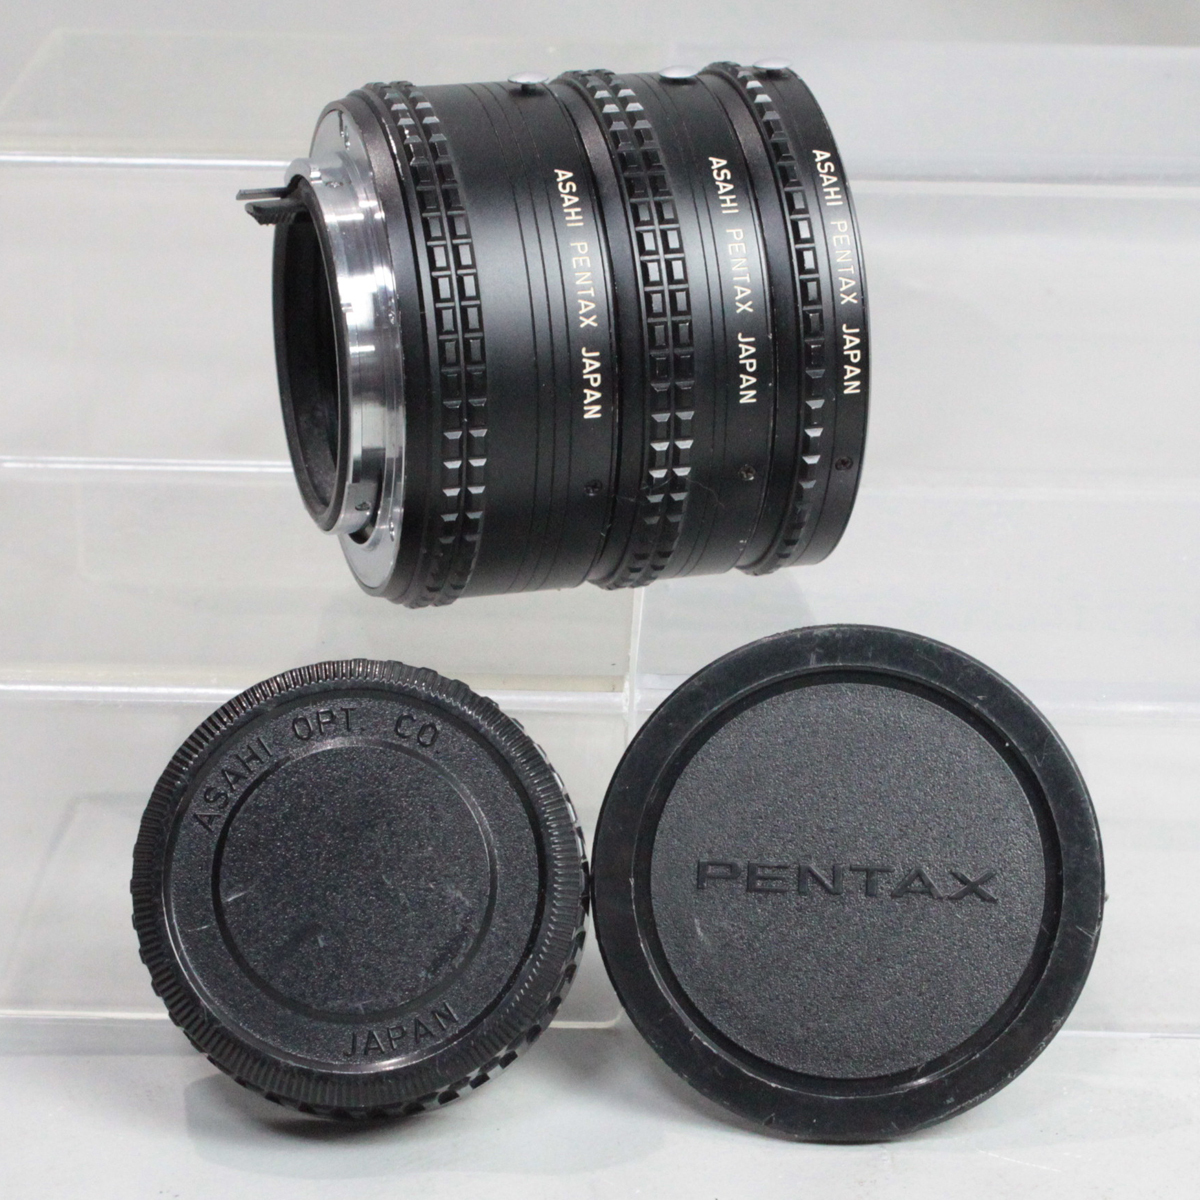 040429 【良品 ペンタックス】 PENTAX AUTO EXTENSION RING K SETの画像1